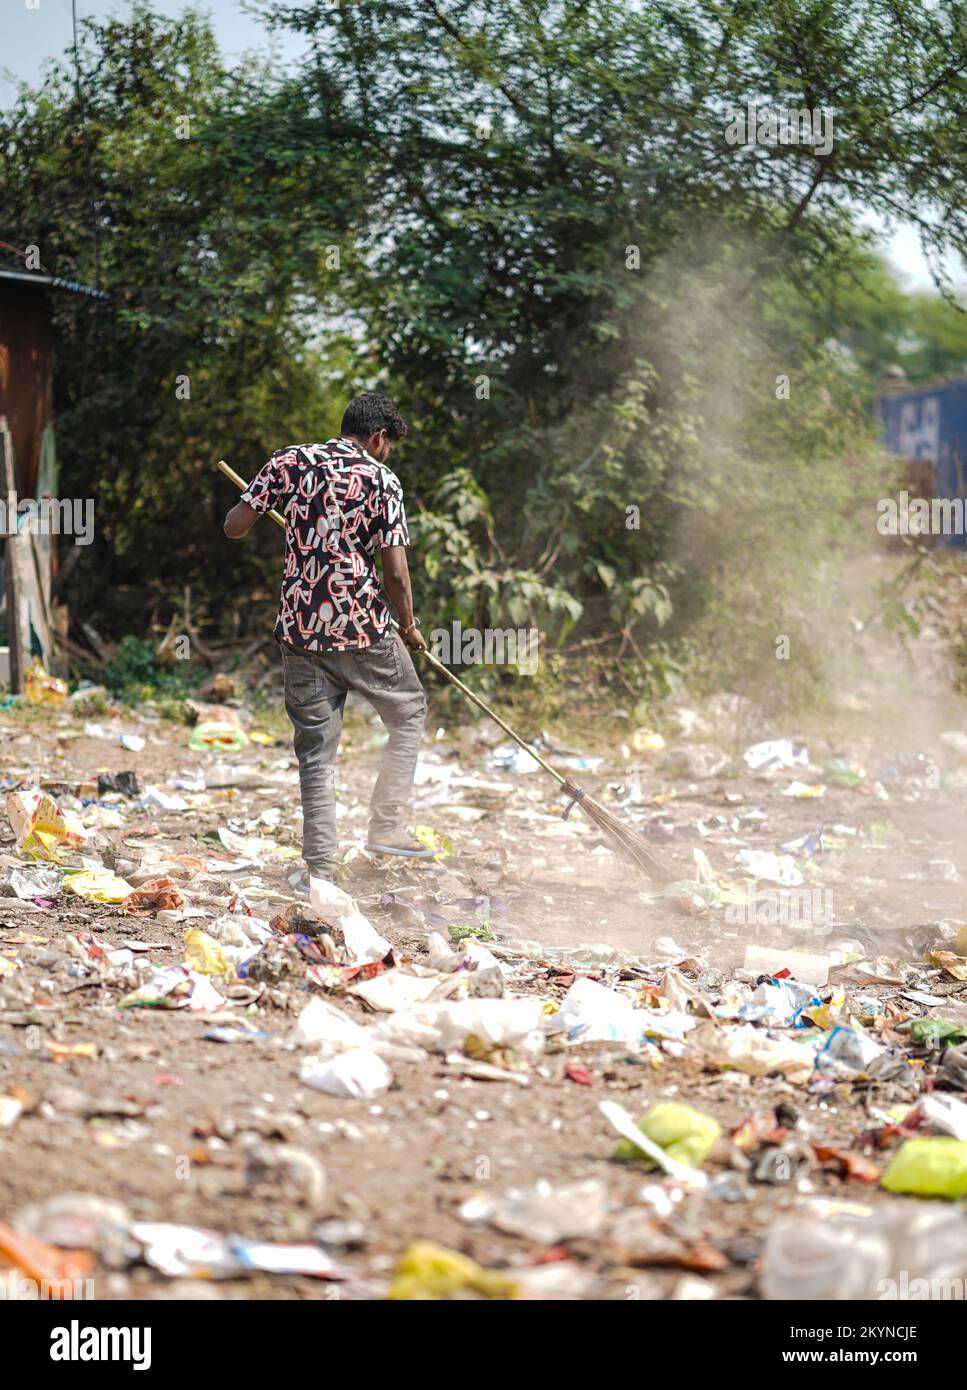 Homme balayant les ordures avec un balai et de la grande zone de déchets en polyhthène, homme nettoyant la zone polluée, journée de contrôle de la pollution, concept de pollution Banque D'Images